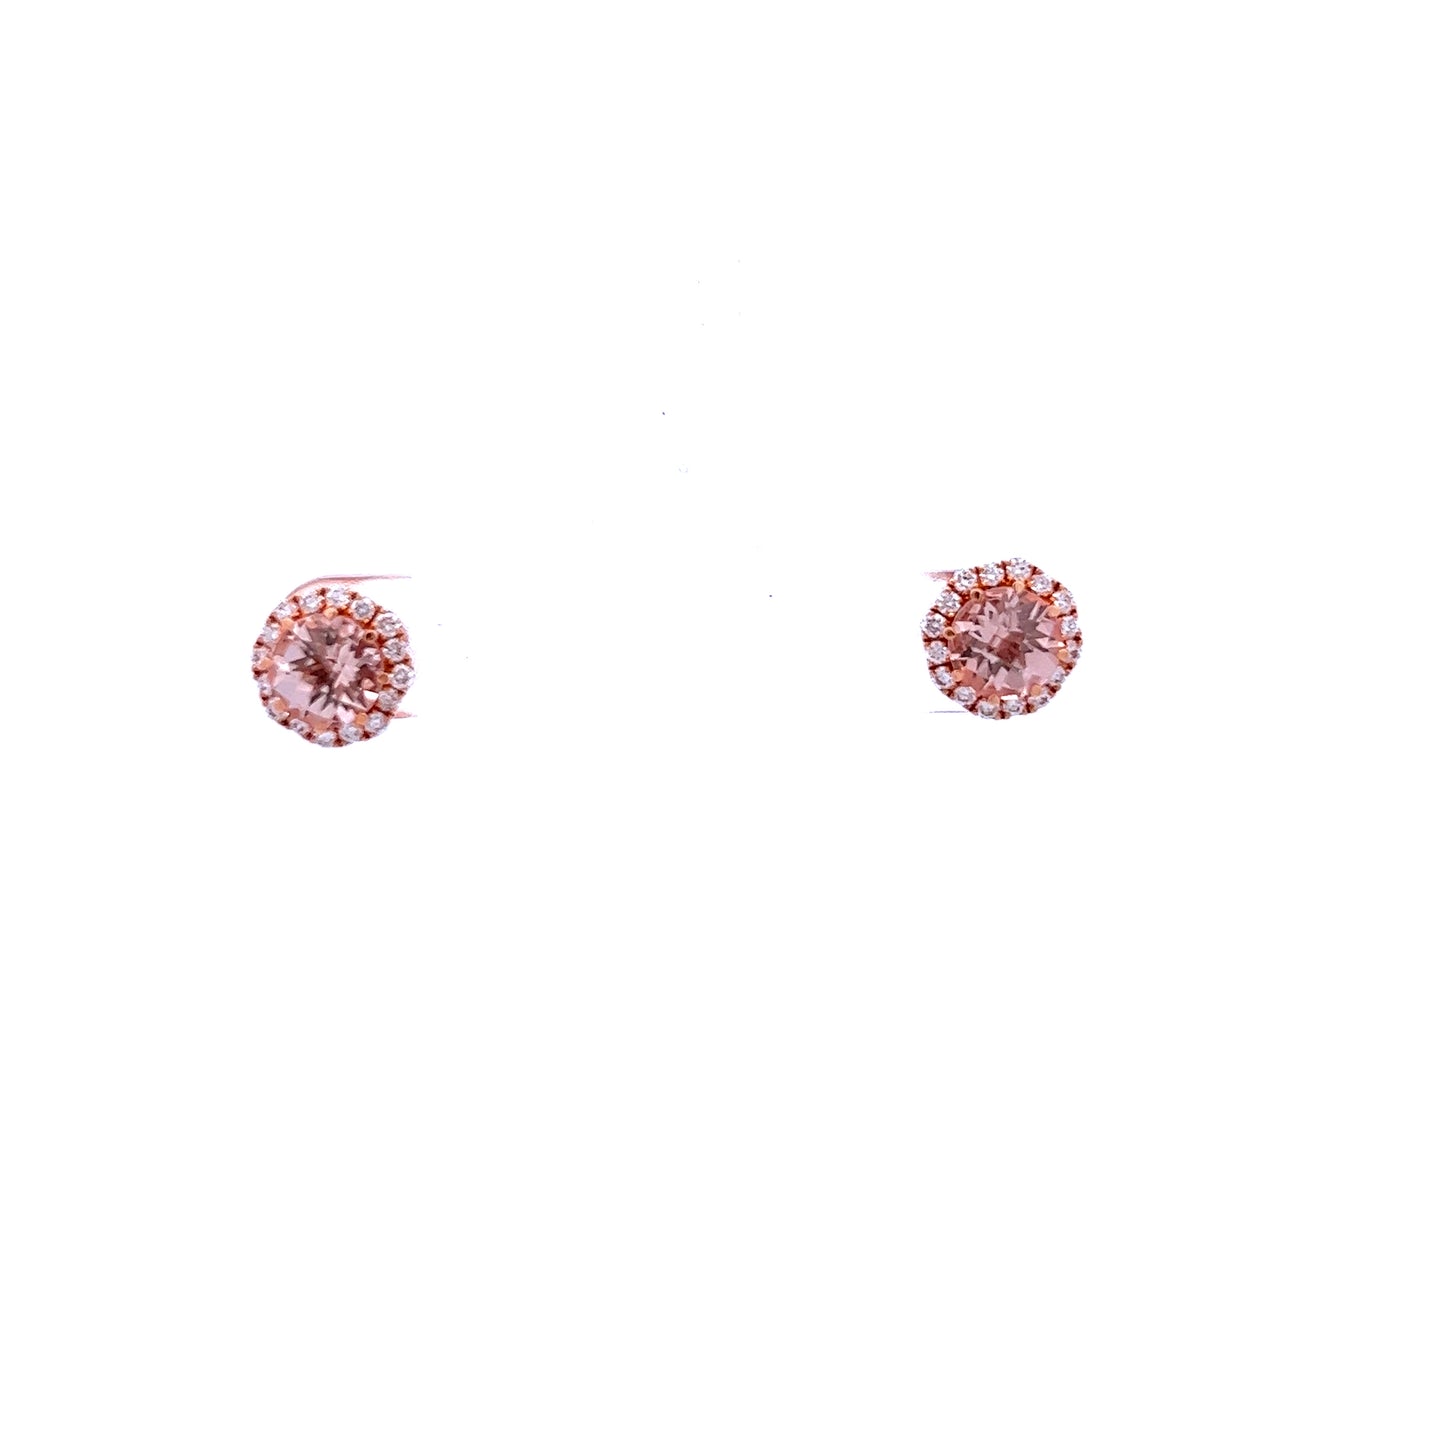 18ct Rose Gold Morganite and Diamond Stud Earrings